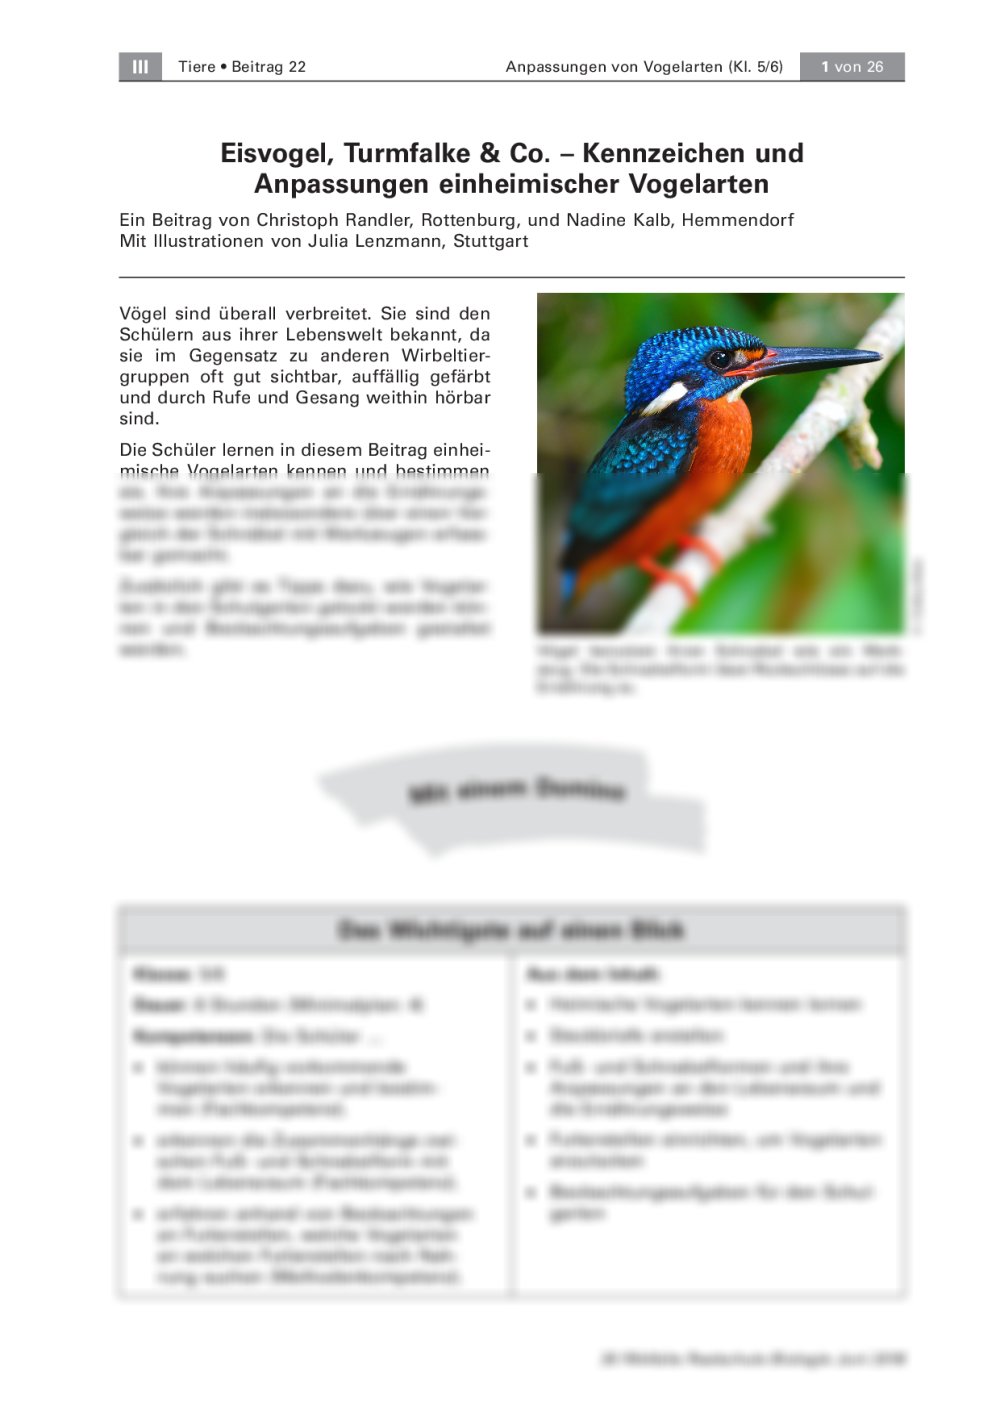 Kennzeichen und Anpassungen einheimischer Vogelarten - Seite 1